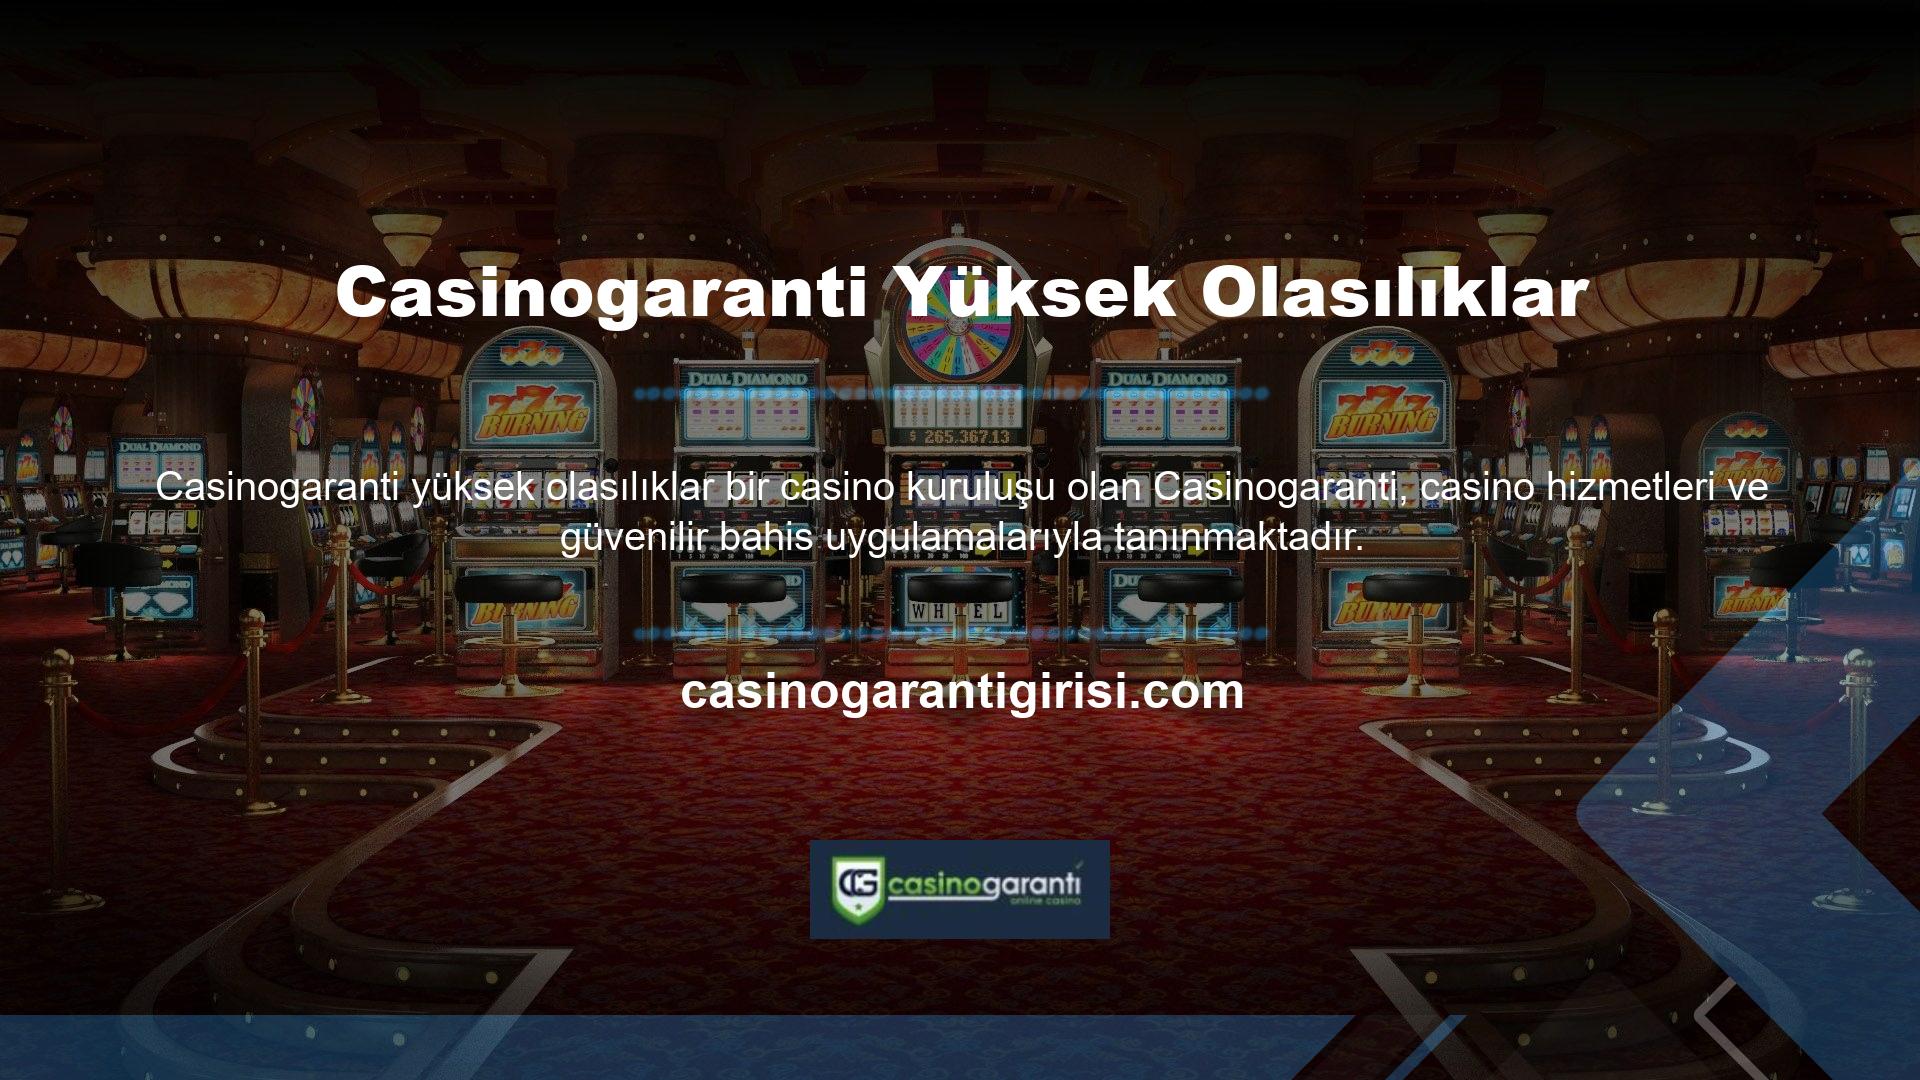 Casinogaranti canlı casino teklifi özellikle heyecan verici ve lansmanından bu yana birçok bahisçinin ilgisini çekti